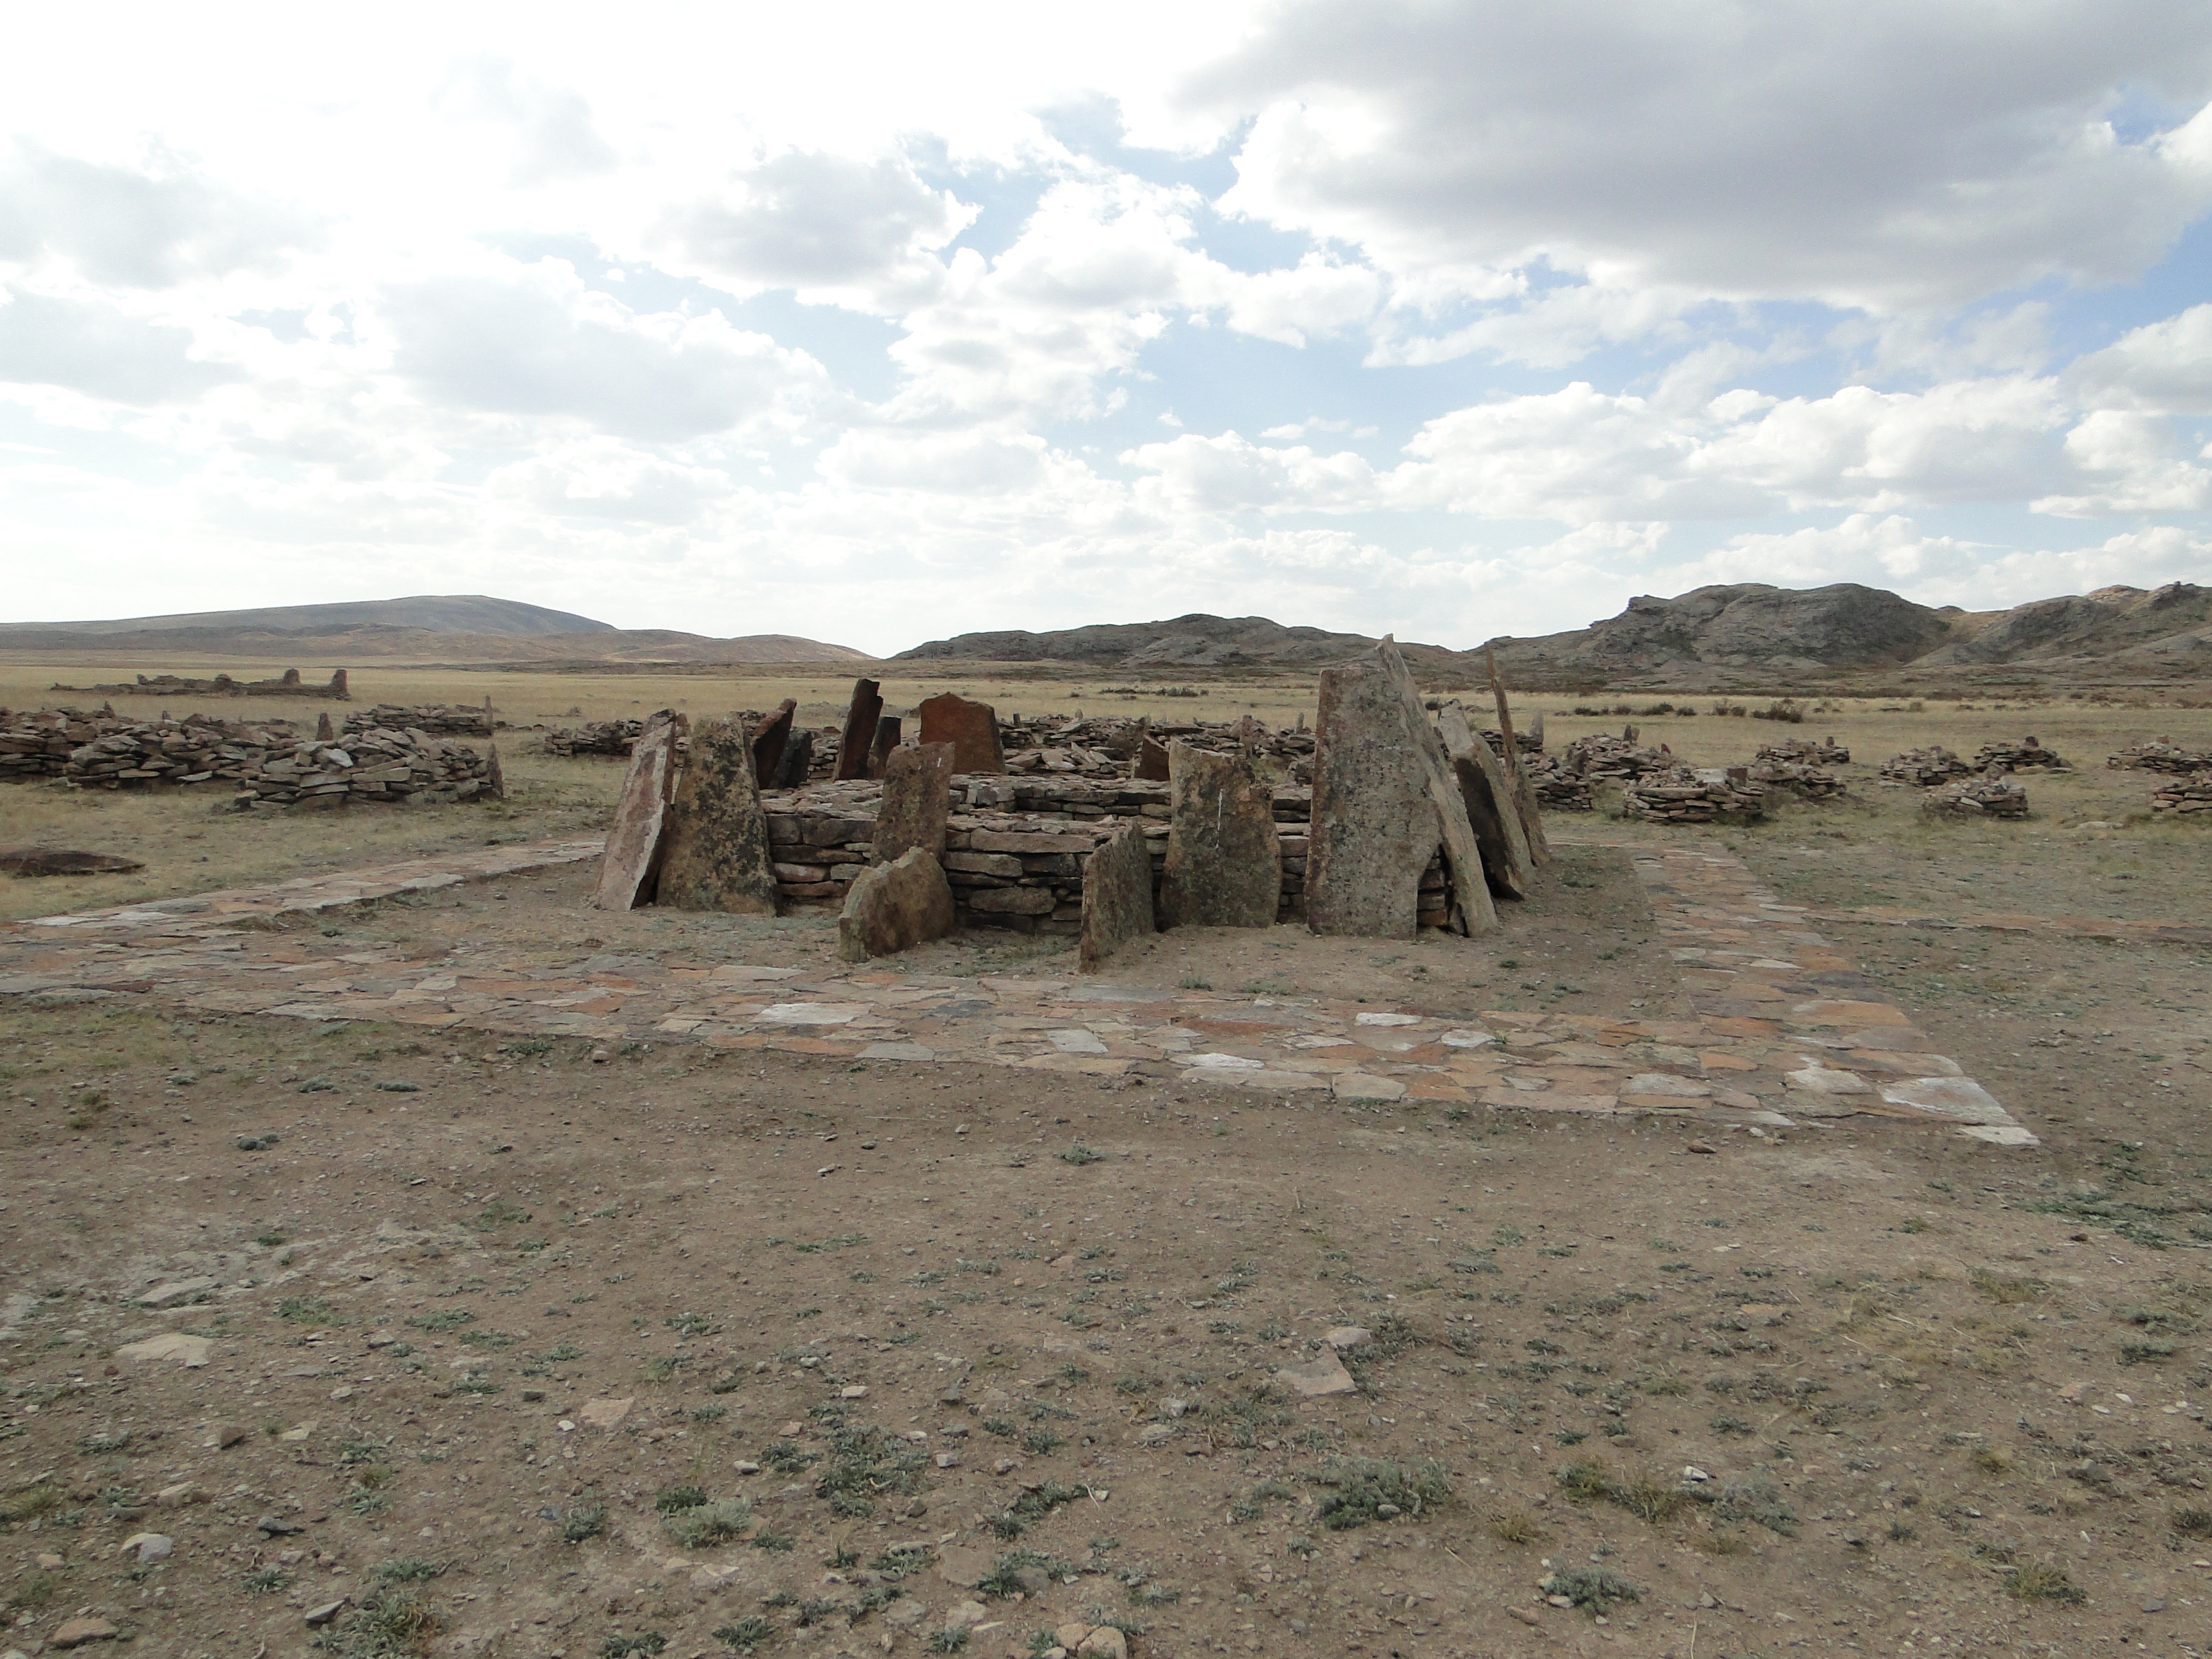 Реферат: История Казахстана каменный век и эпоха бронзы